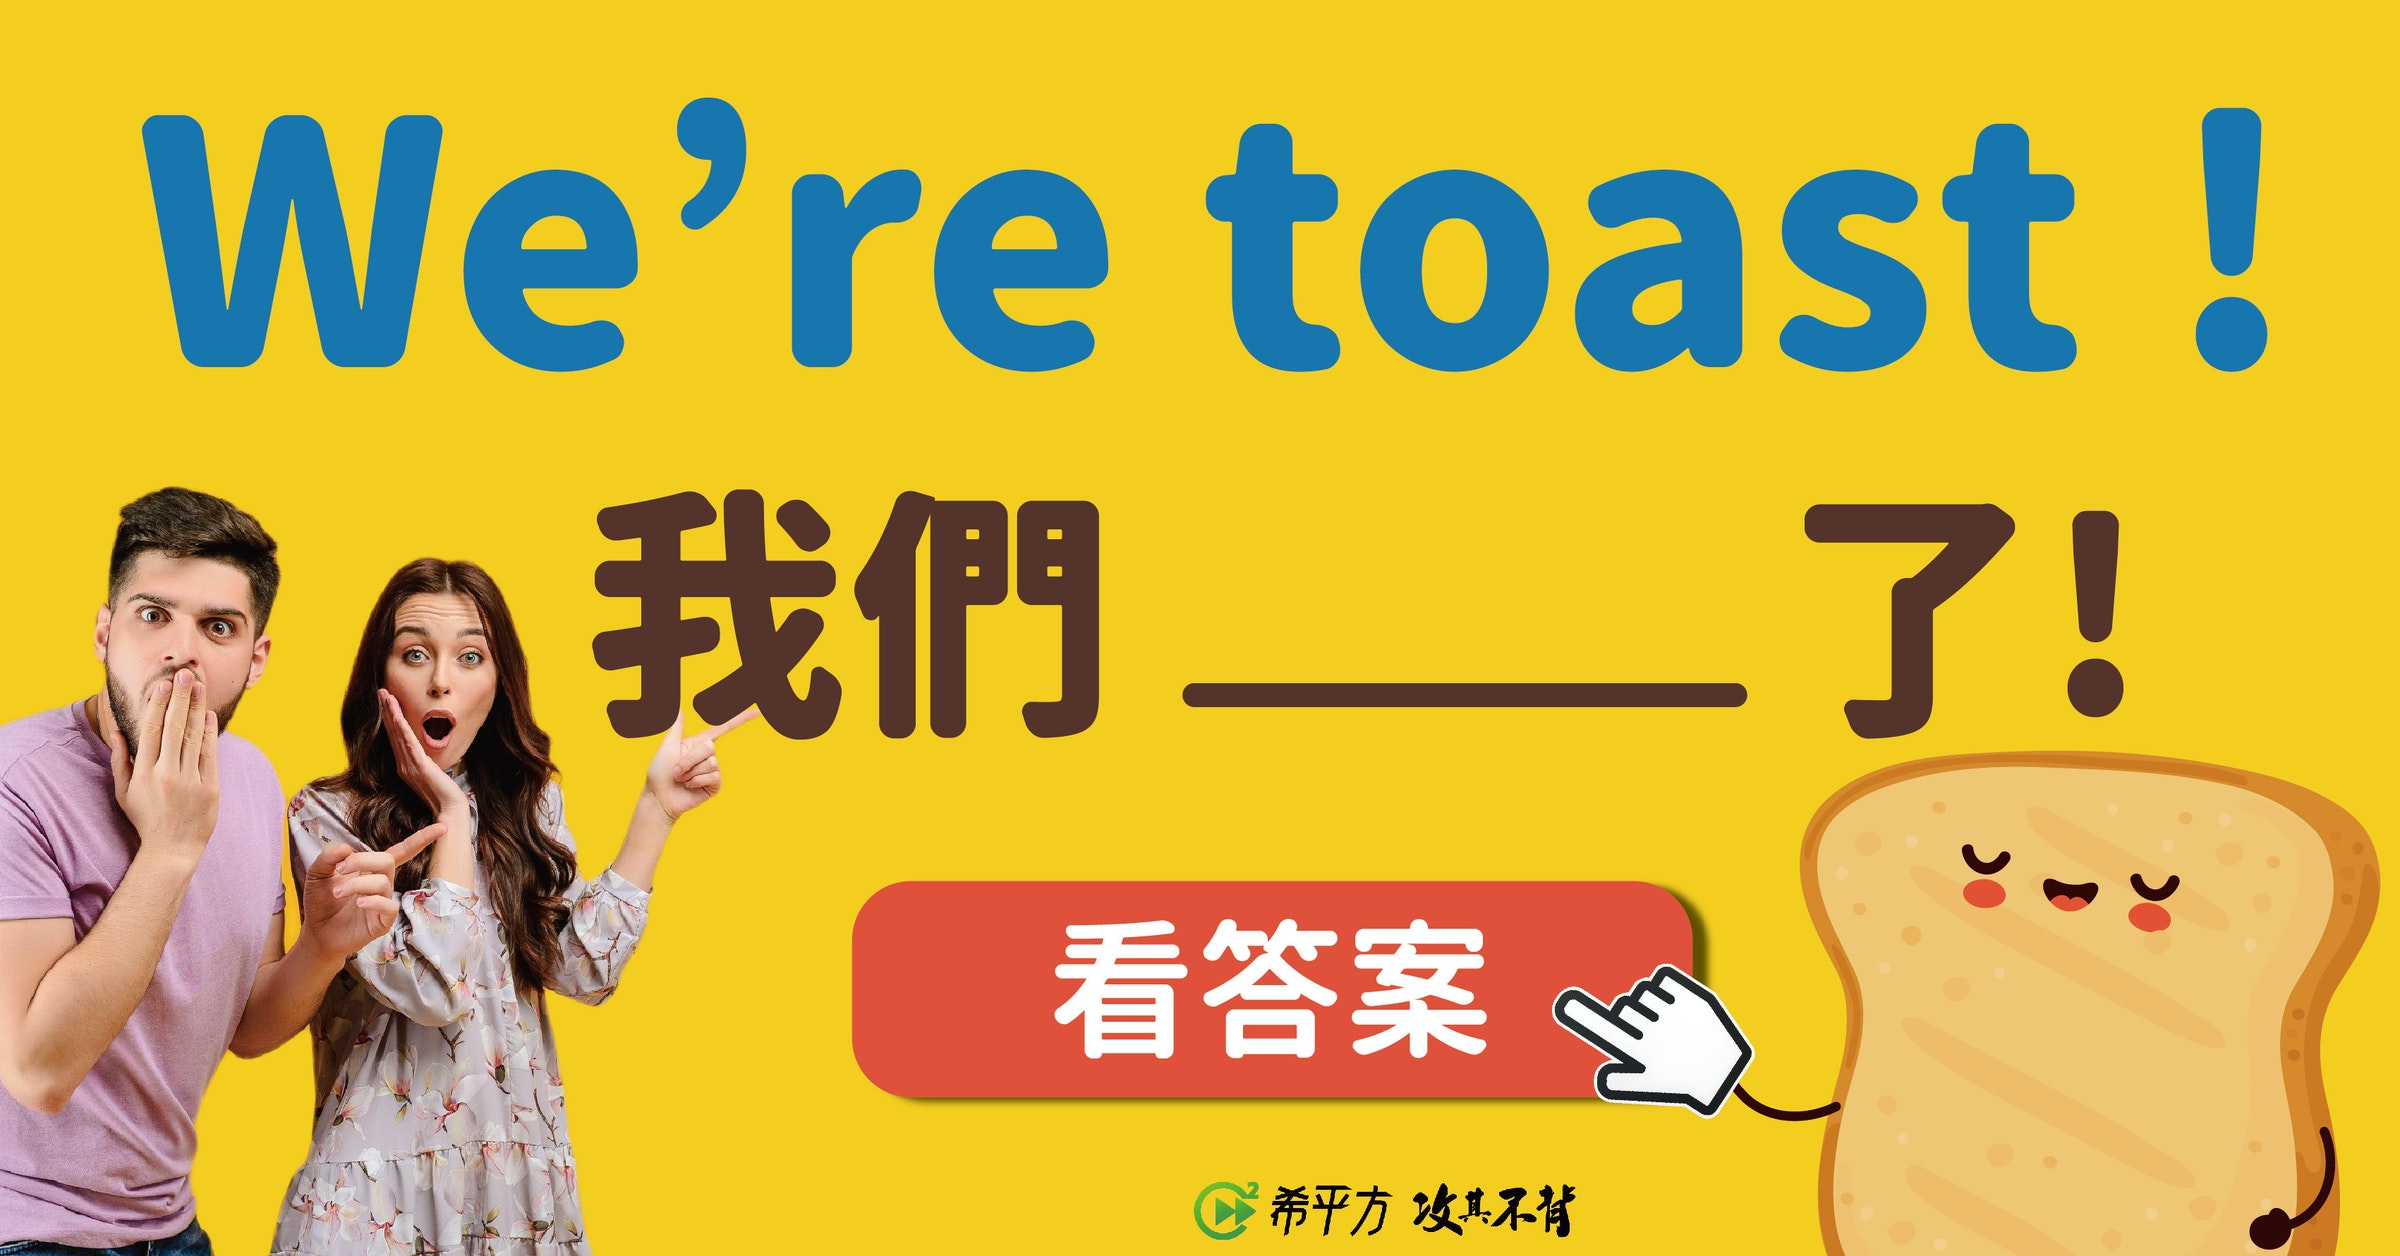 照片中提到了We're toast!、我們、_了!，跟國際象棋系統有關，包含了微笑、公共關係、人類行為、牌、海報